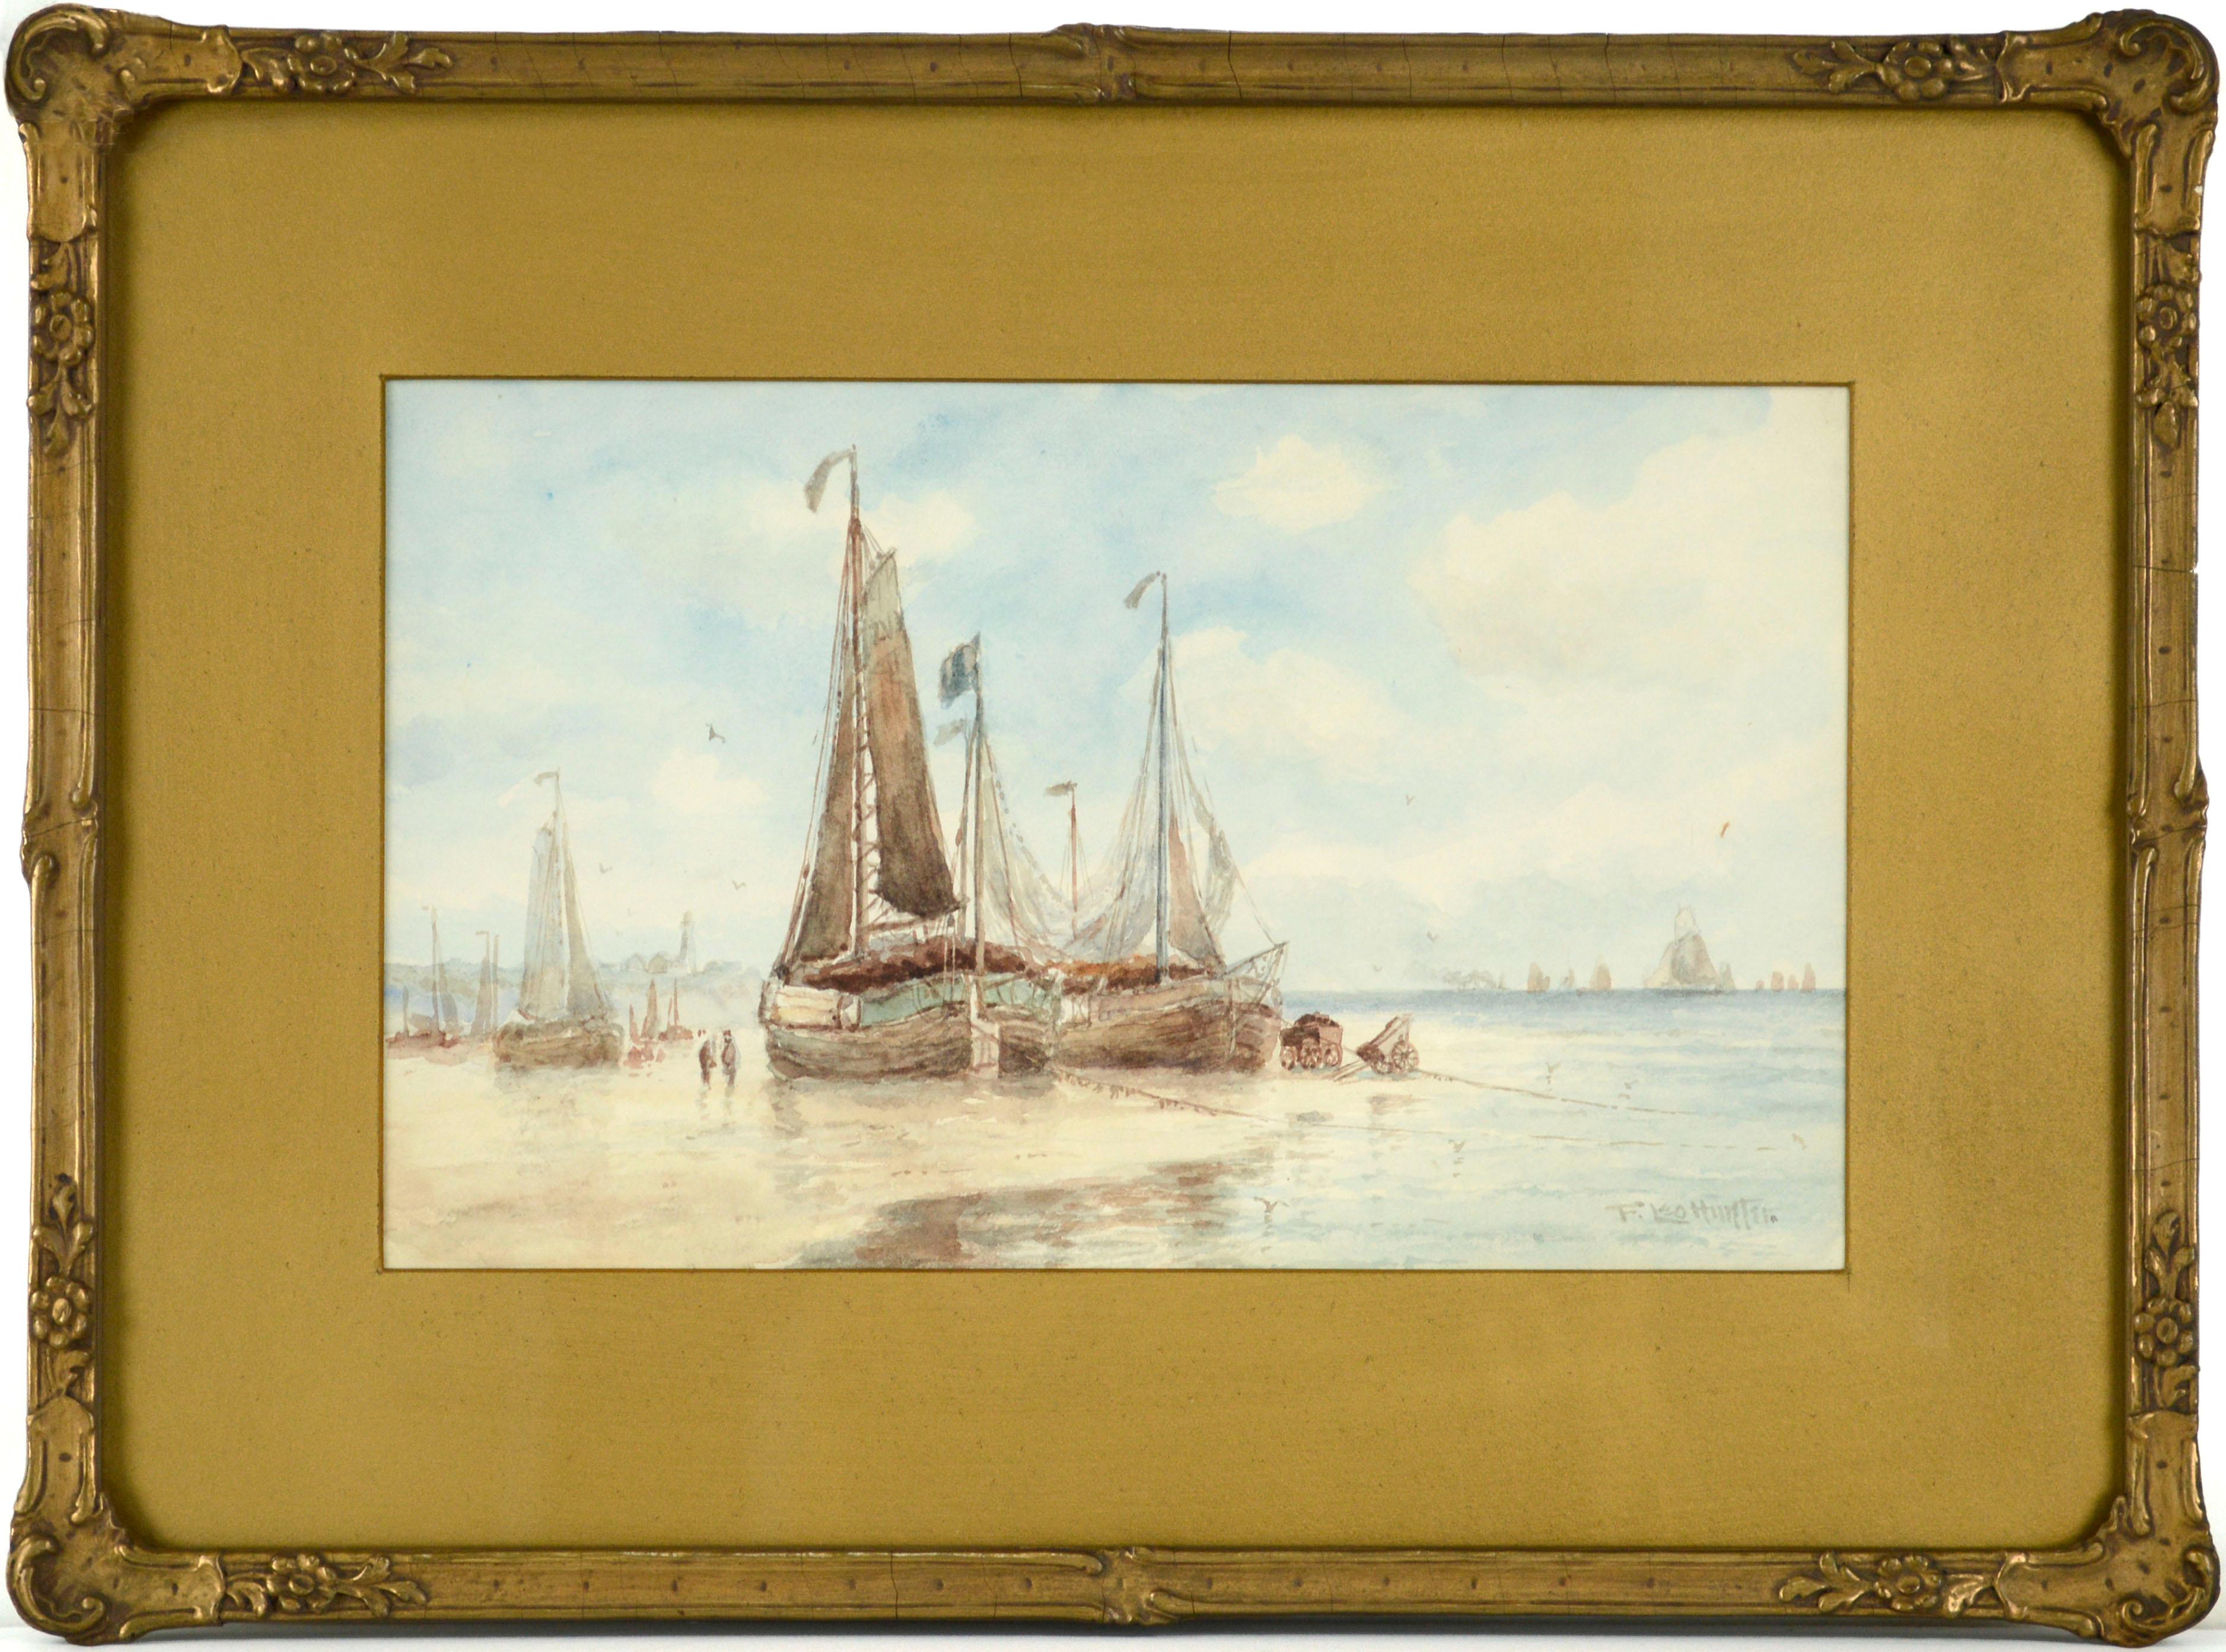 Segelboote im Hafen, figuratives Landschaftsaquarell des frühen 20. Jahrhunderts